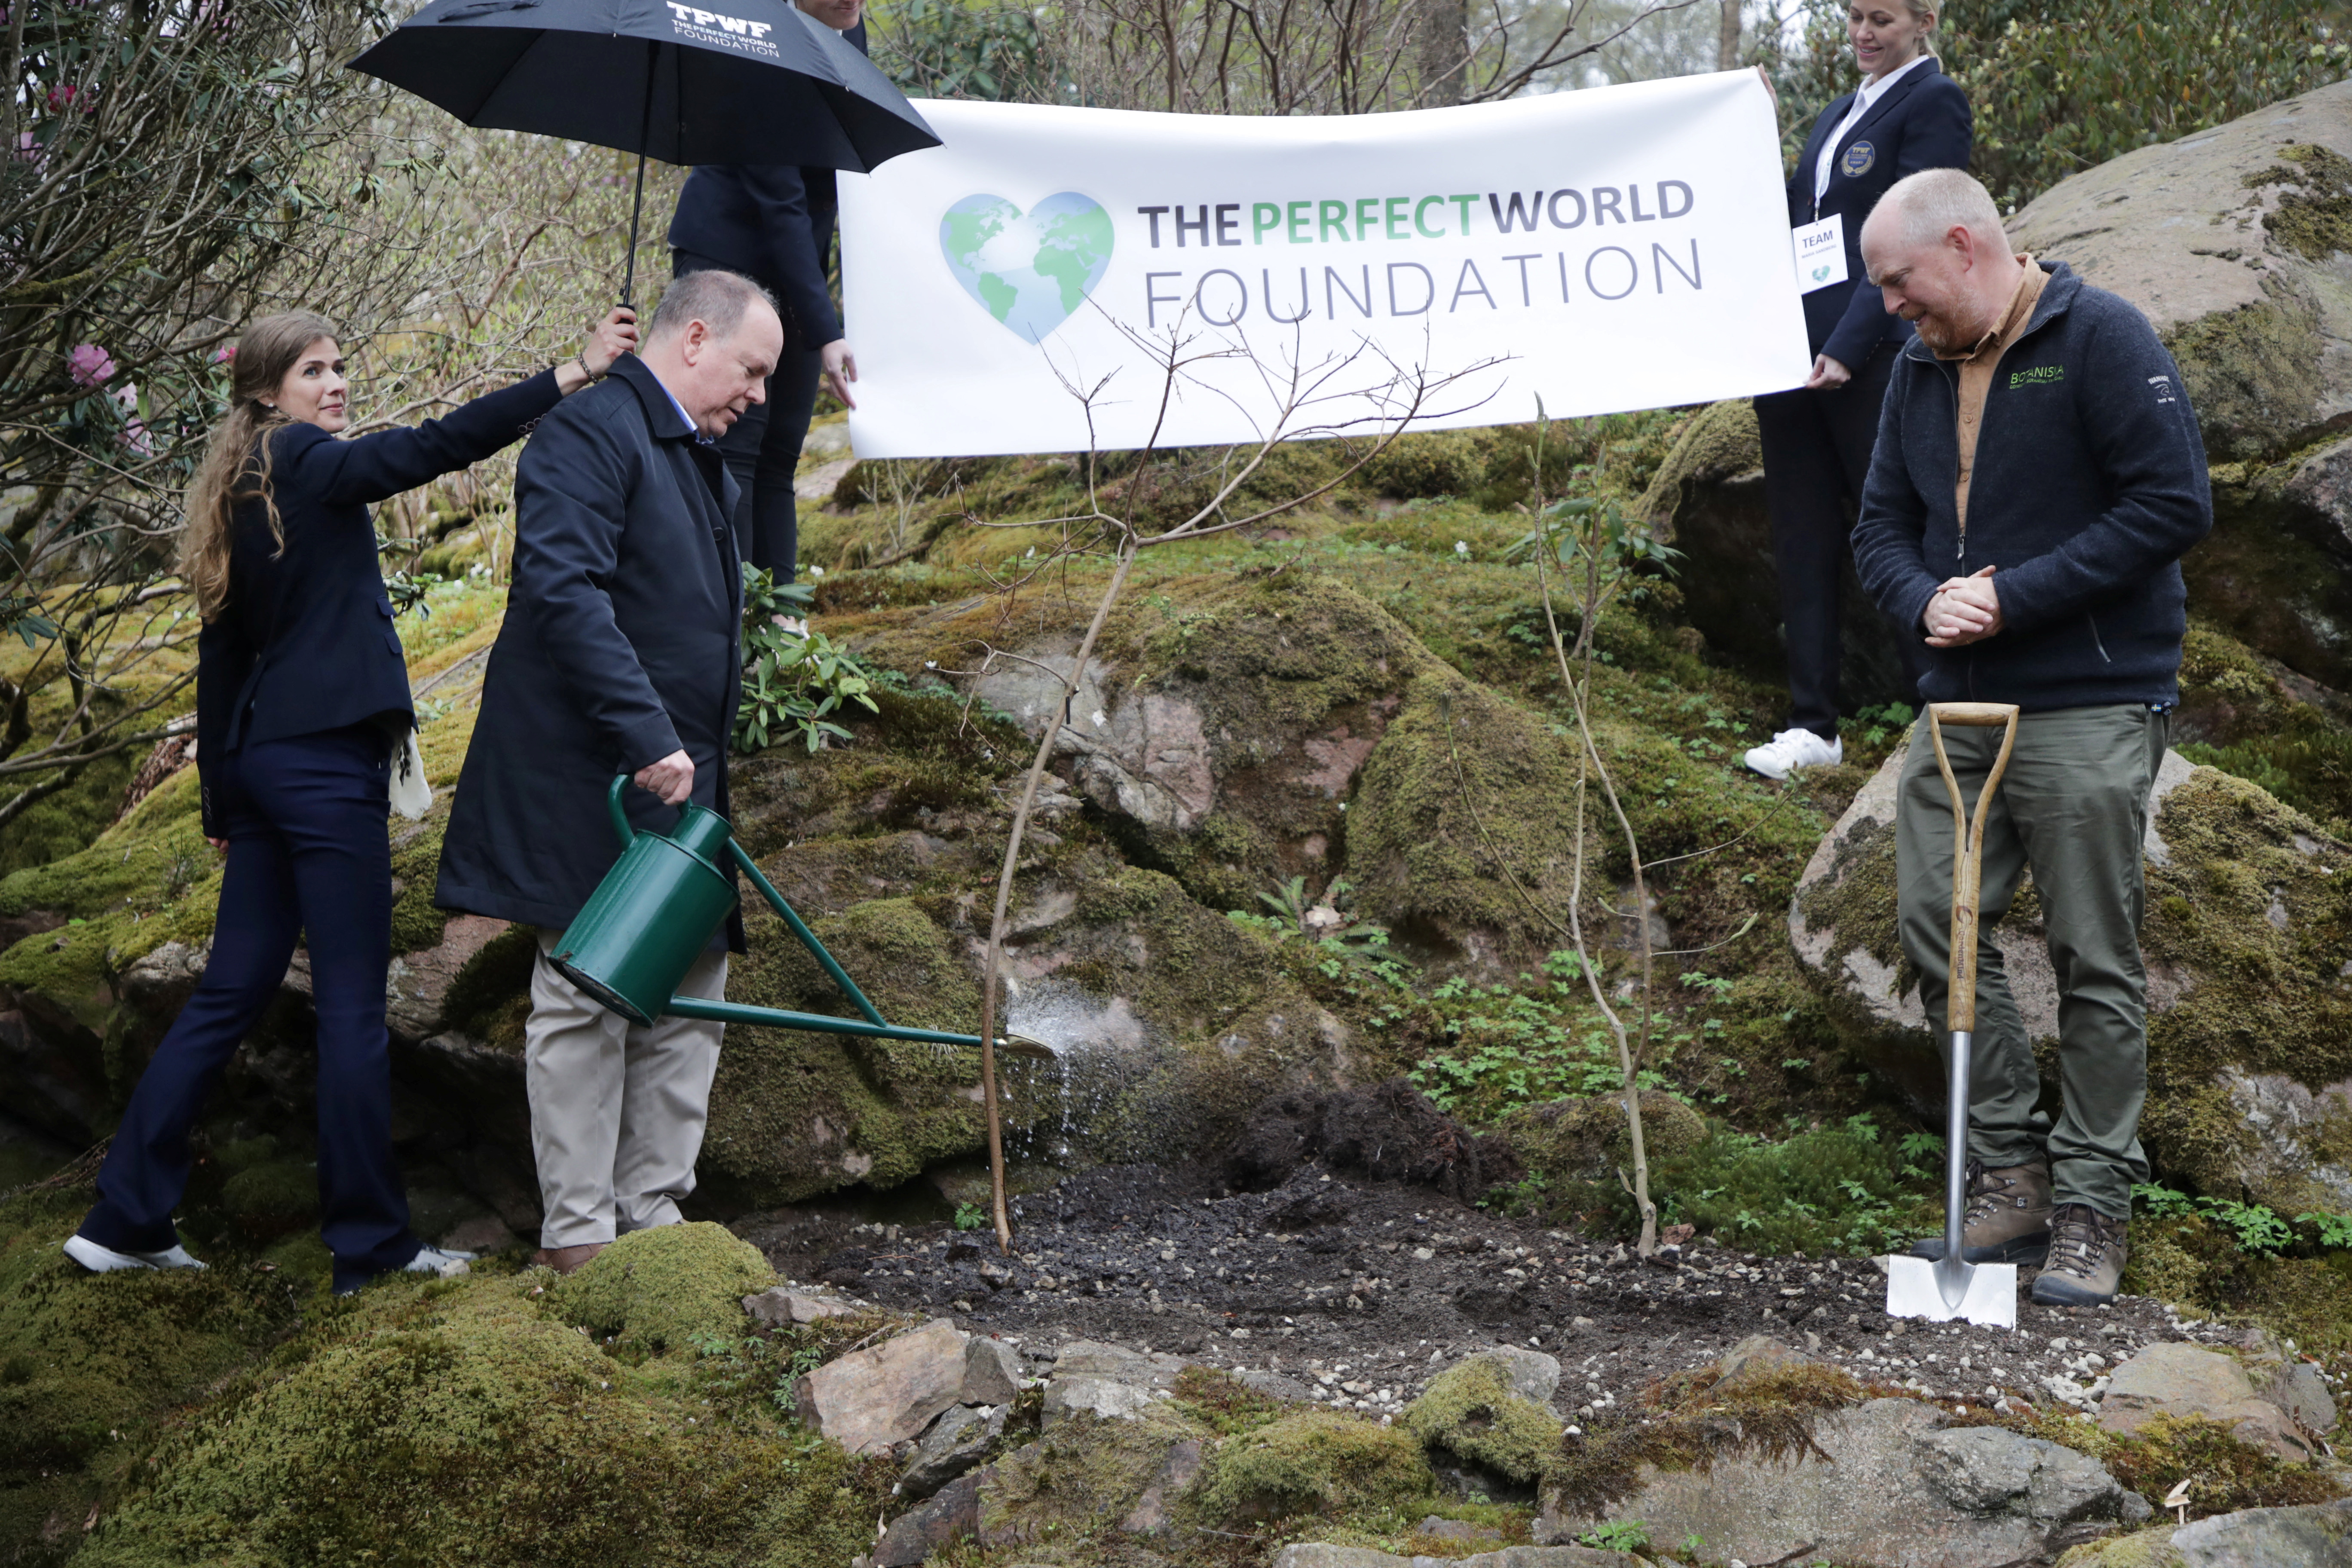 El Príncipe Alberto II de Mónaco riega un árbol después de plantarlo en el "Bosque Attenborough" del Jardín Botánico de Gotemburgo, la iniciativa global de plantación de árboles de la Fundación Mundo Perfecto, en Gotemburgo, Suecia (REUTERS)